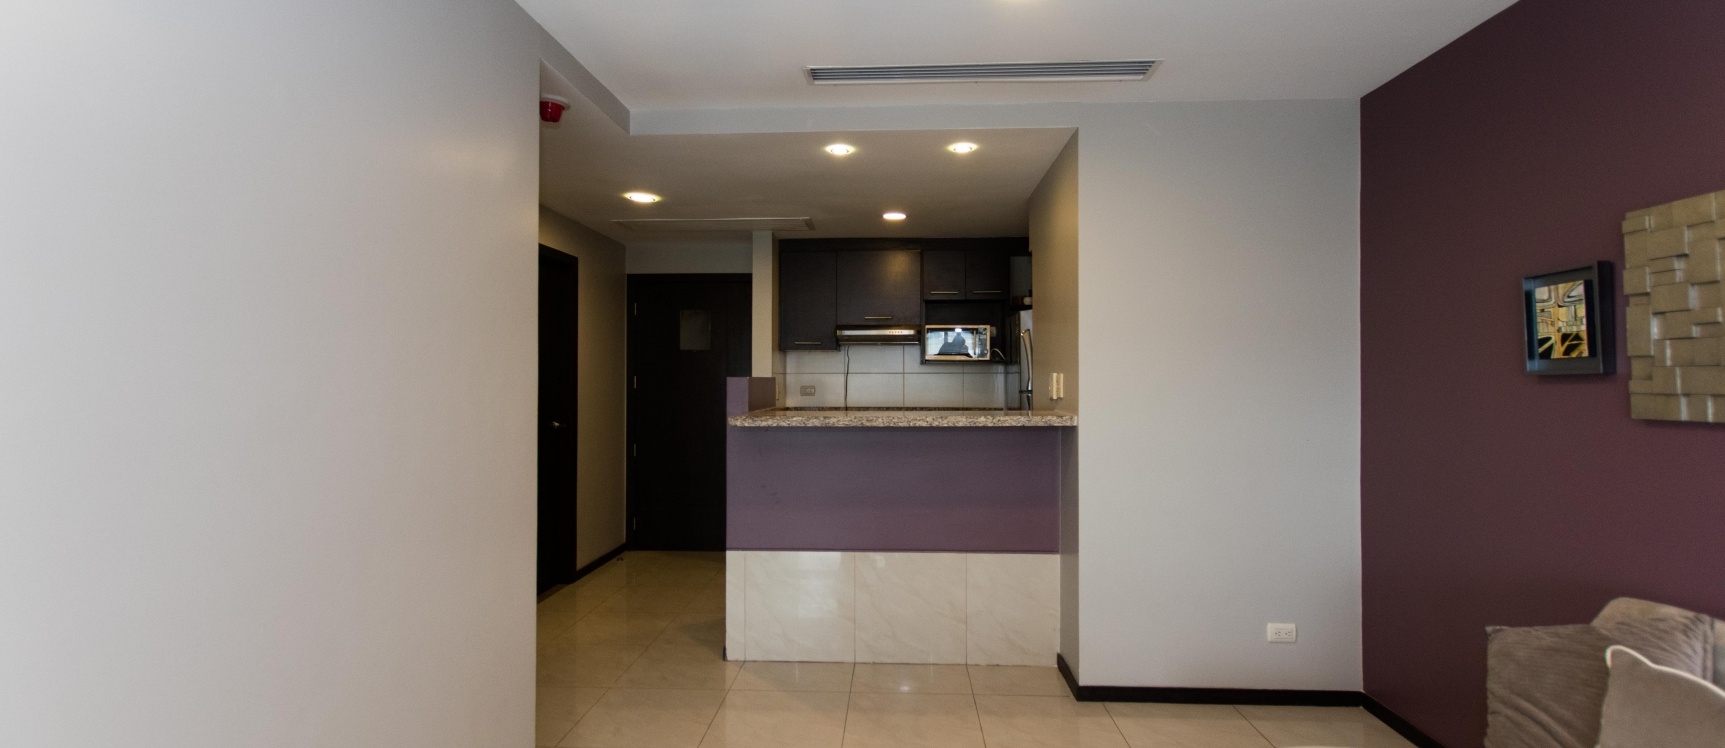 GeoBienes - Suite amoblada en alquiler ubicada en el edificio Elite Building  - Plusvalia Guayaquil Casas de venta y alquiler Inmobiliaria Ecuador